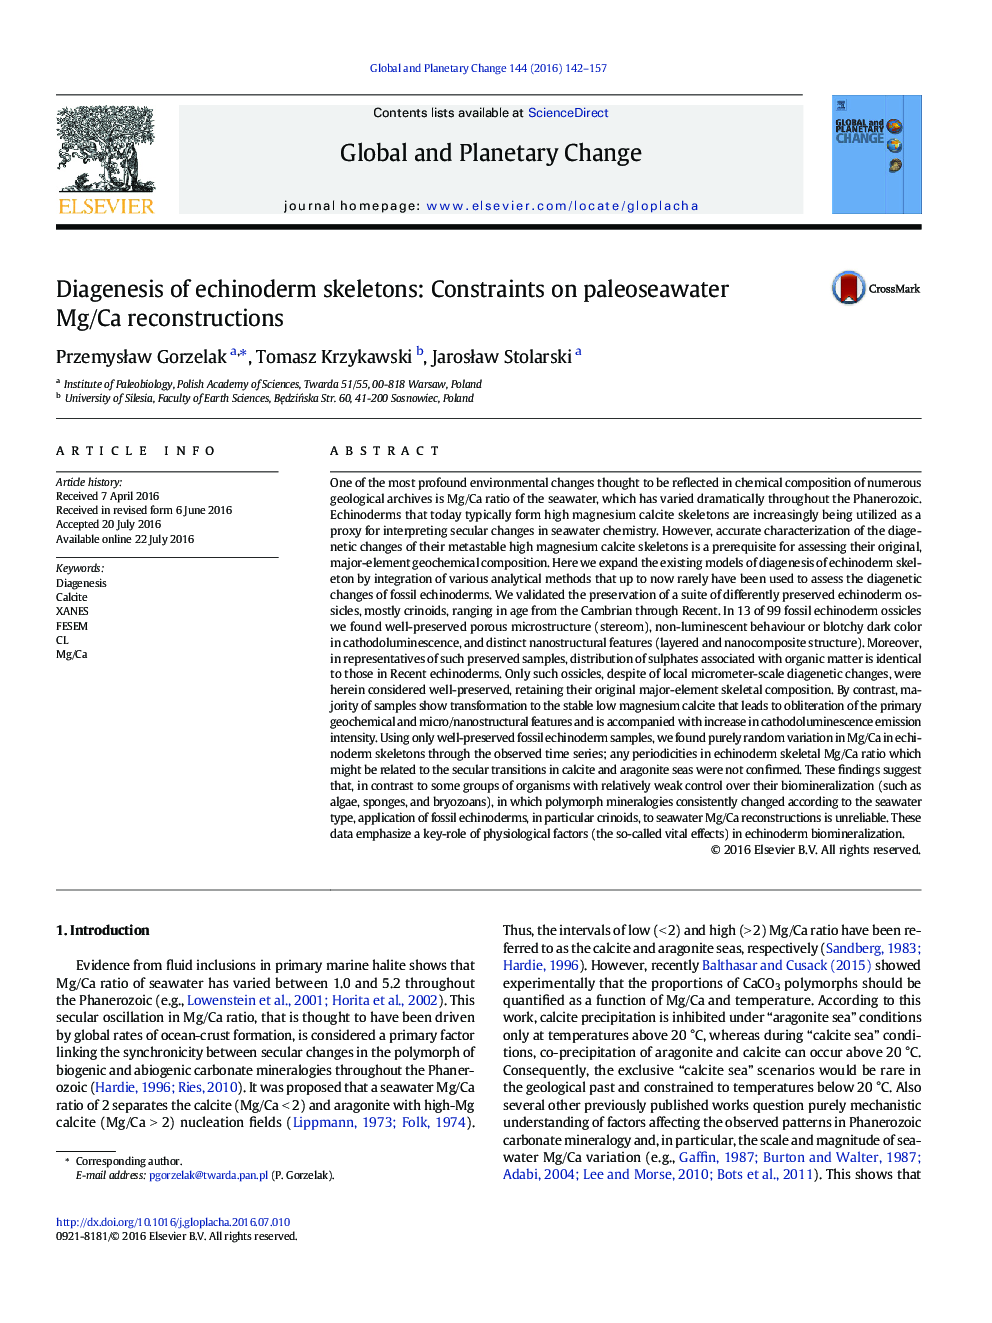 دیاژنز اسکلت های خارپوستان: محدودیت در بازسازی منیزیم/کلسیم paleoseawater 